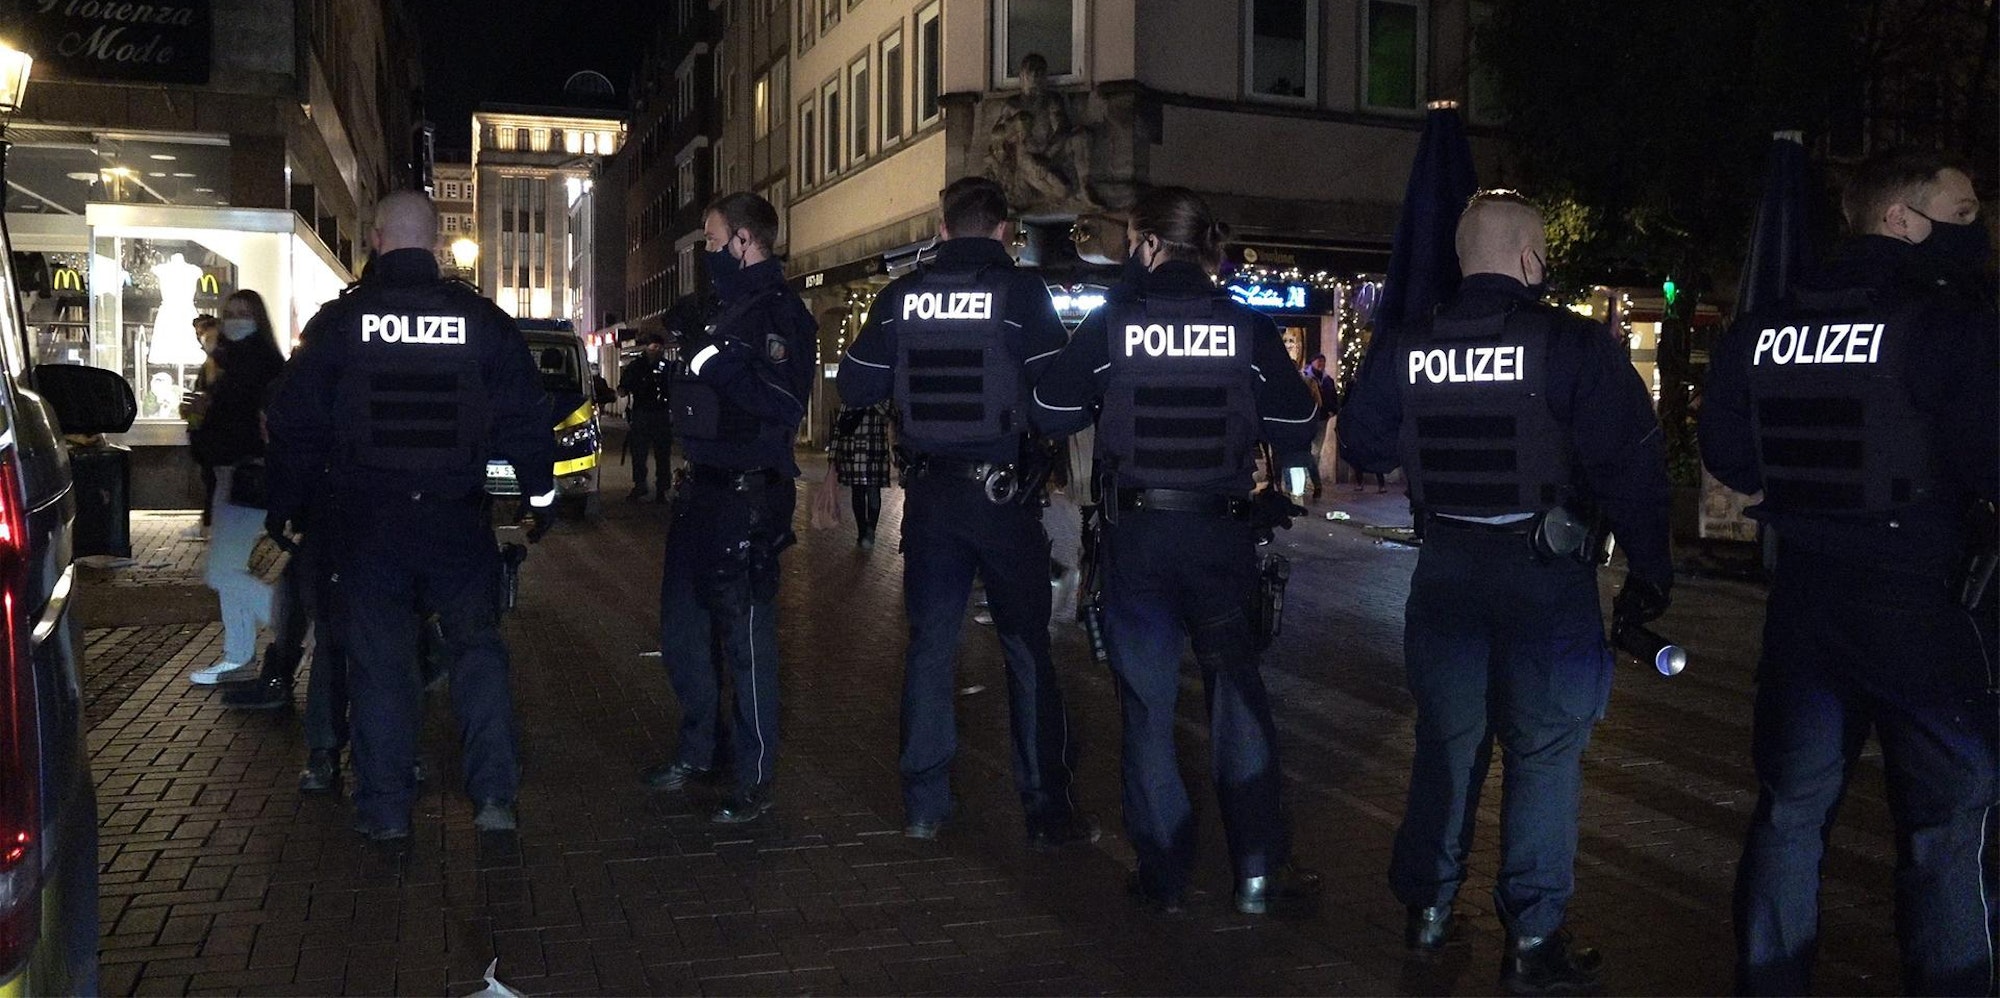 Polizei Düsseldorf attackiert (1)